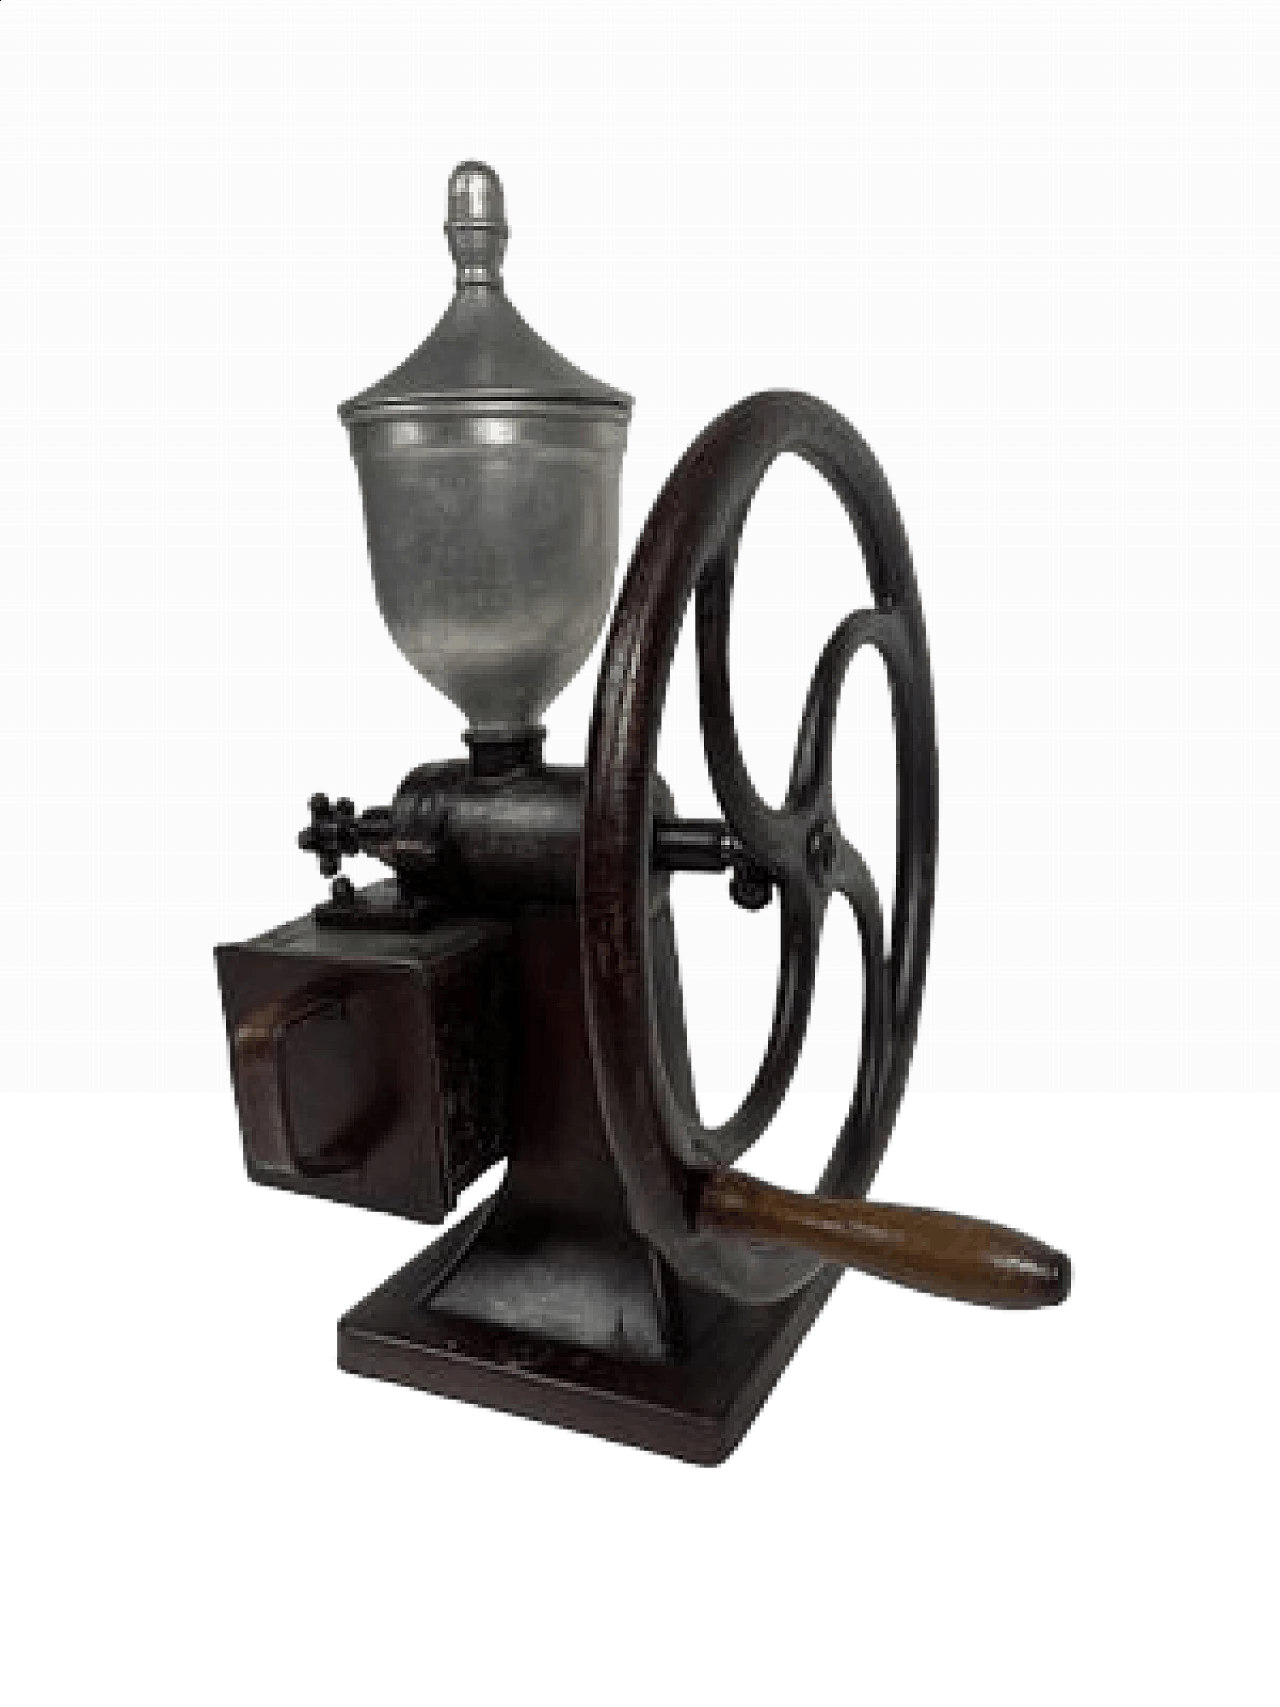 Flywheel coffee grinder, late 19th century 16